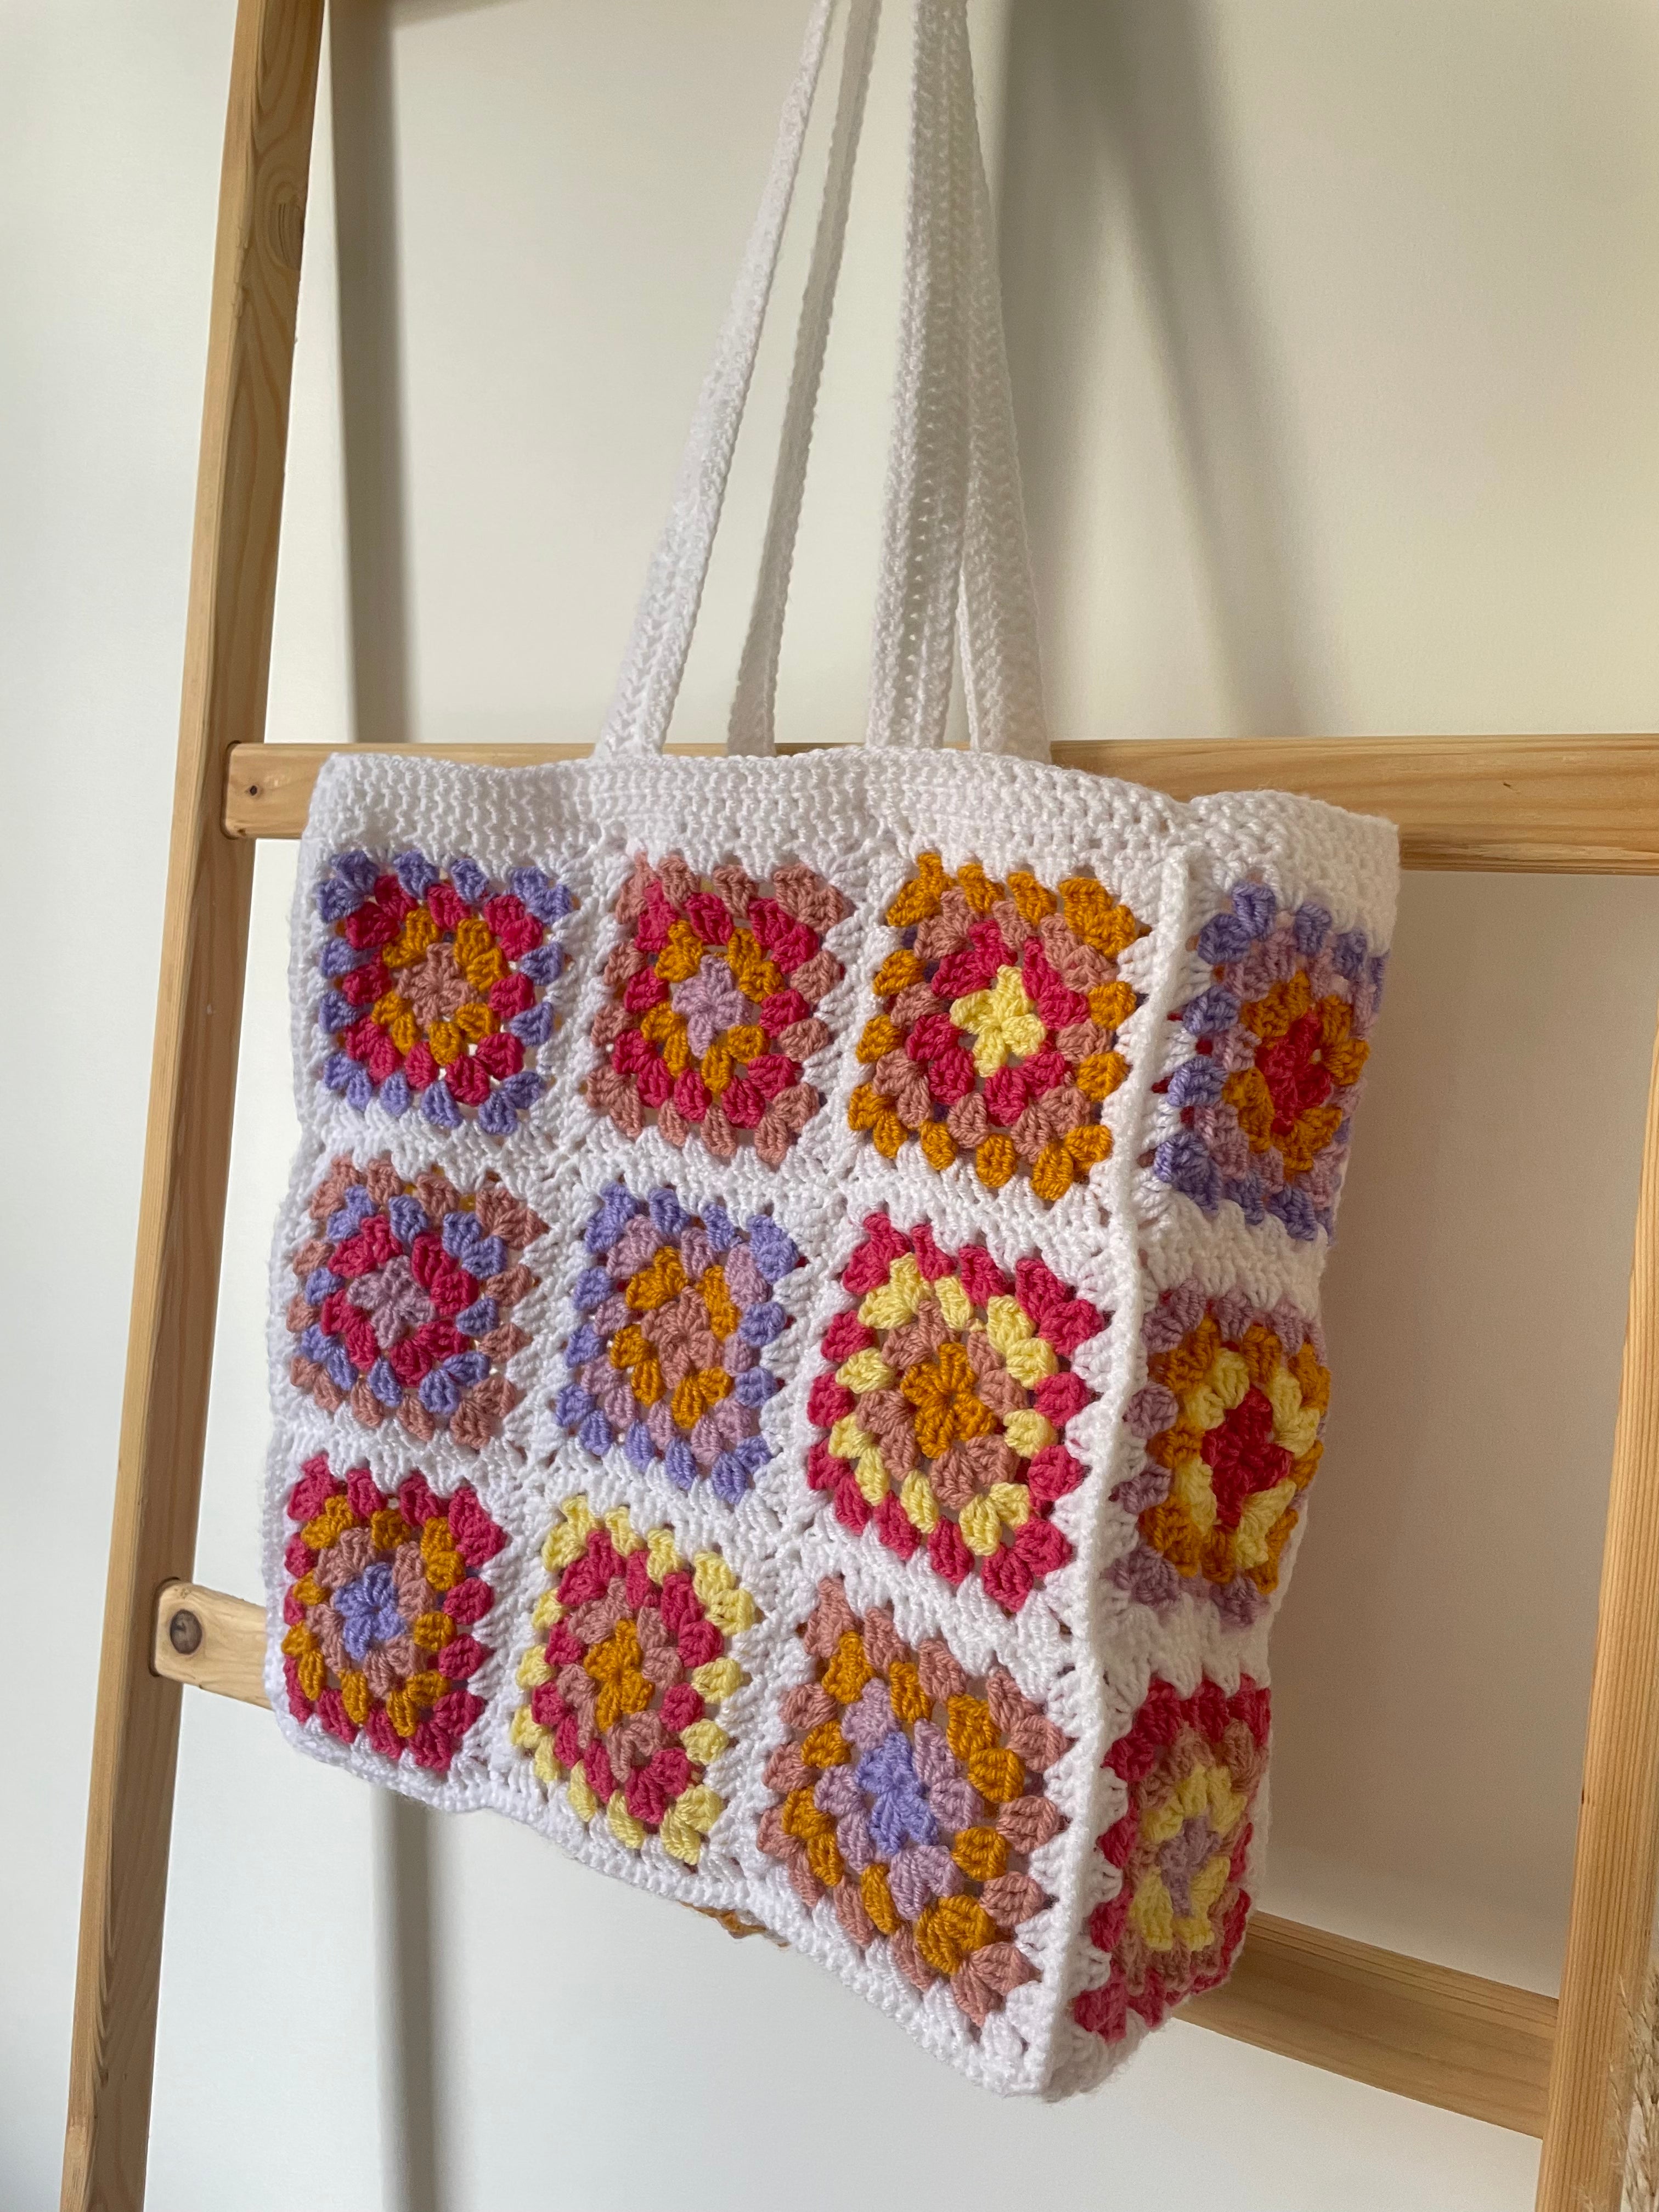 Tuto crochet : mon cabas en granny squares – L'Atelier d'Archibald